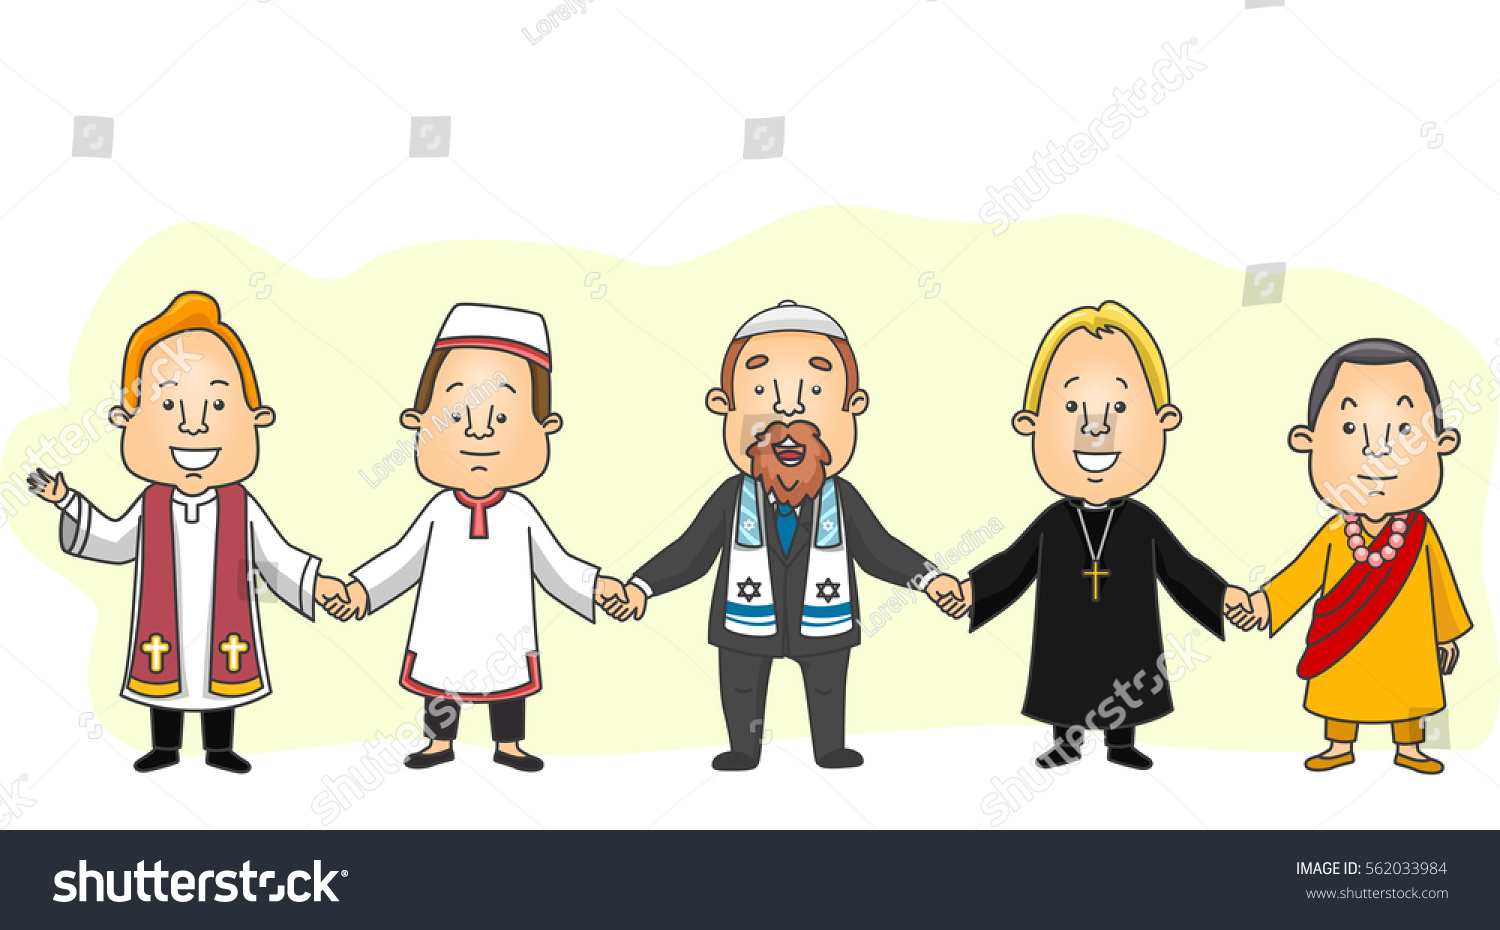 Толерантность в разных религиях